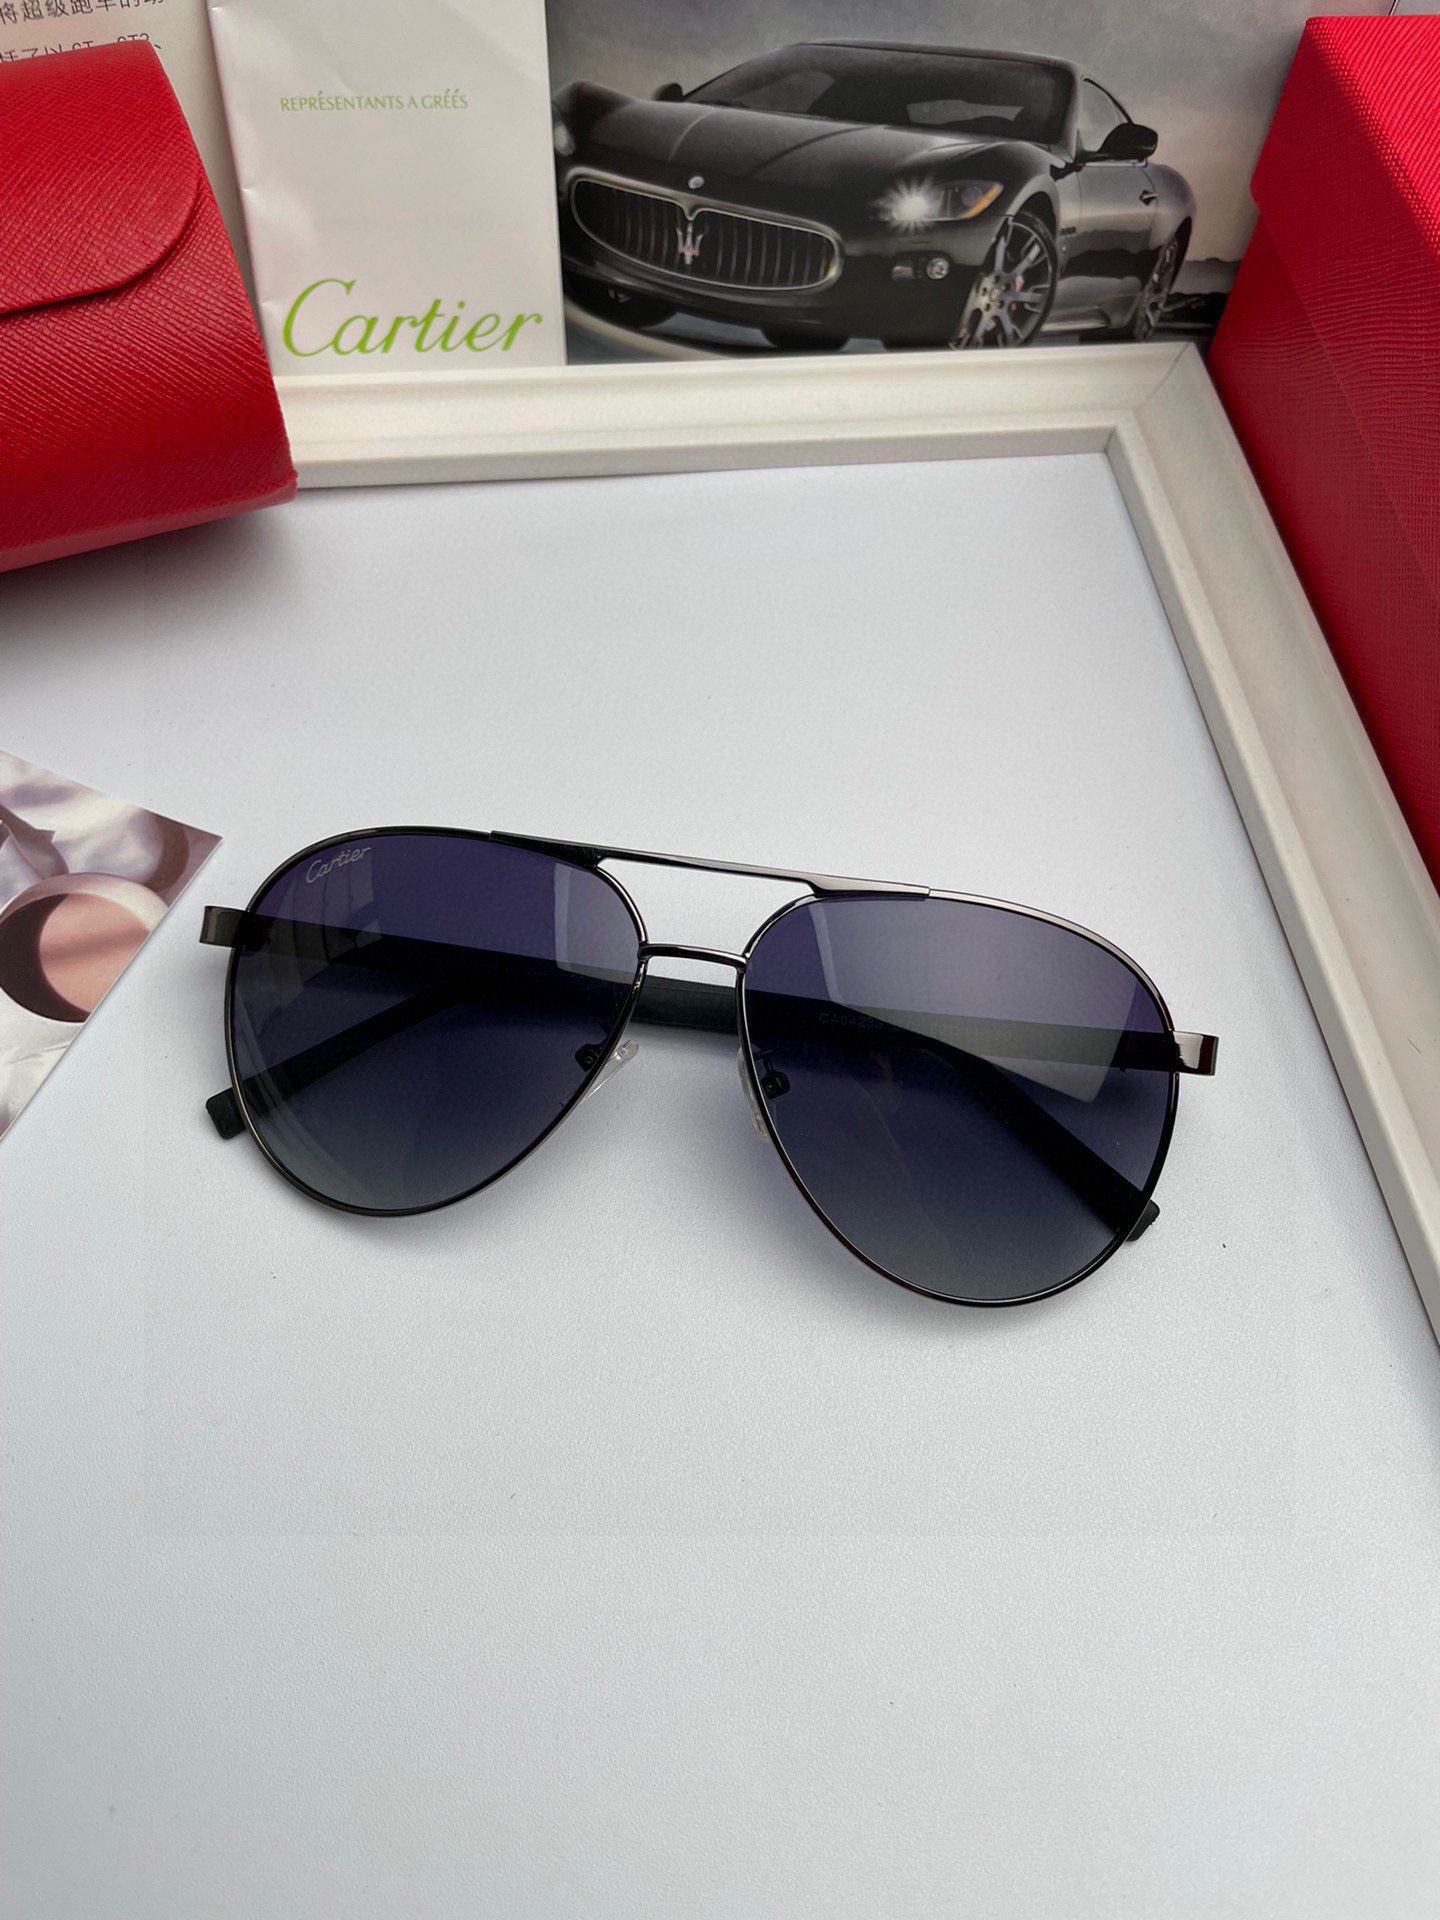 新款品牌卡地亚Cartier原单品质男士女士同款偏光太阳镜️材质高清尼龙镜片金属合金logo镜腿看细节就